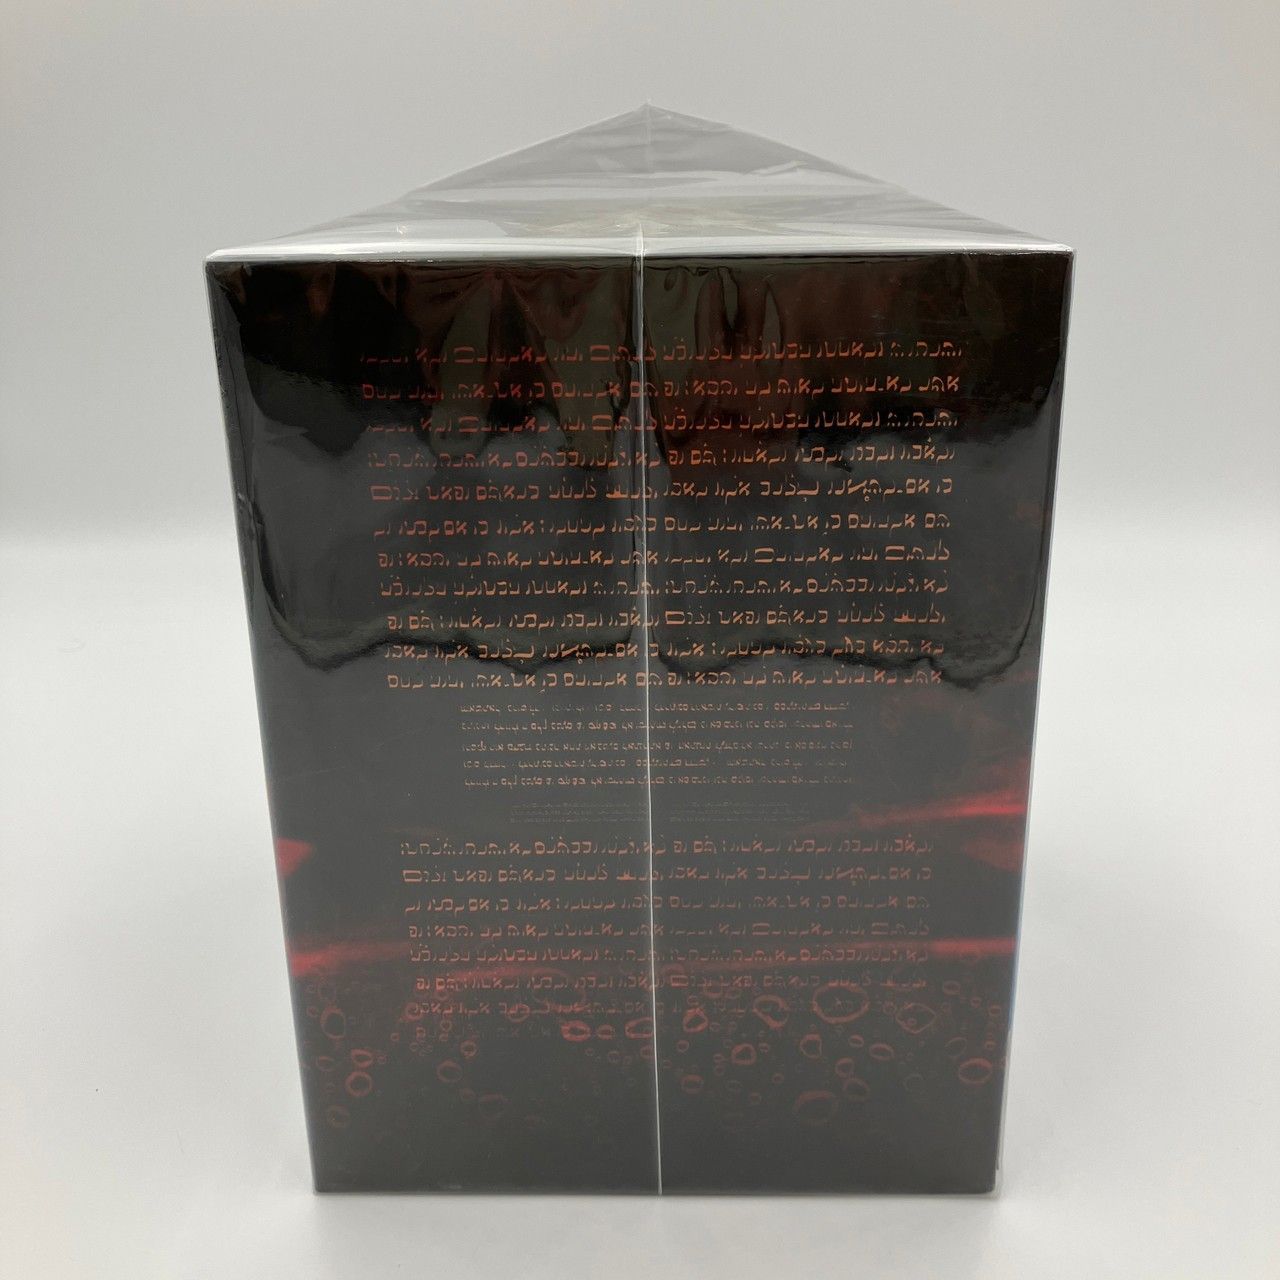 「未開封品」新世紀エヴァンゲリオン DVDBOX 日テレ限定版